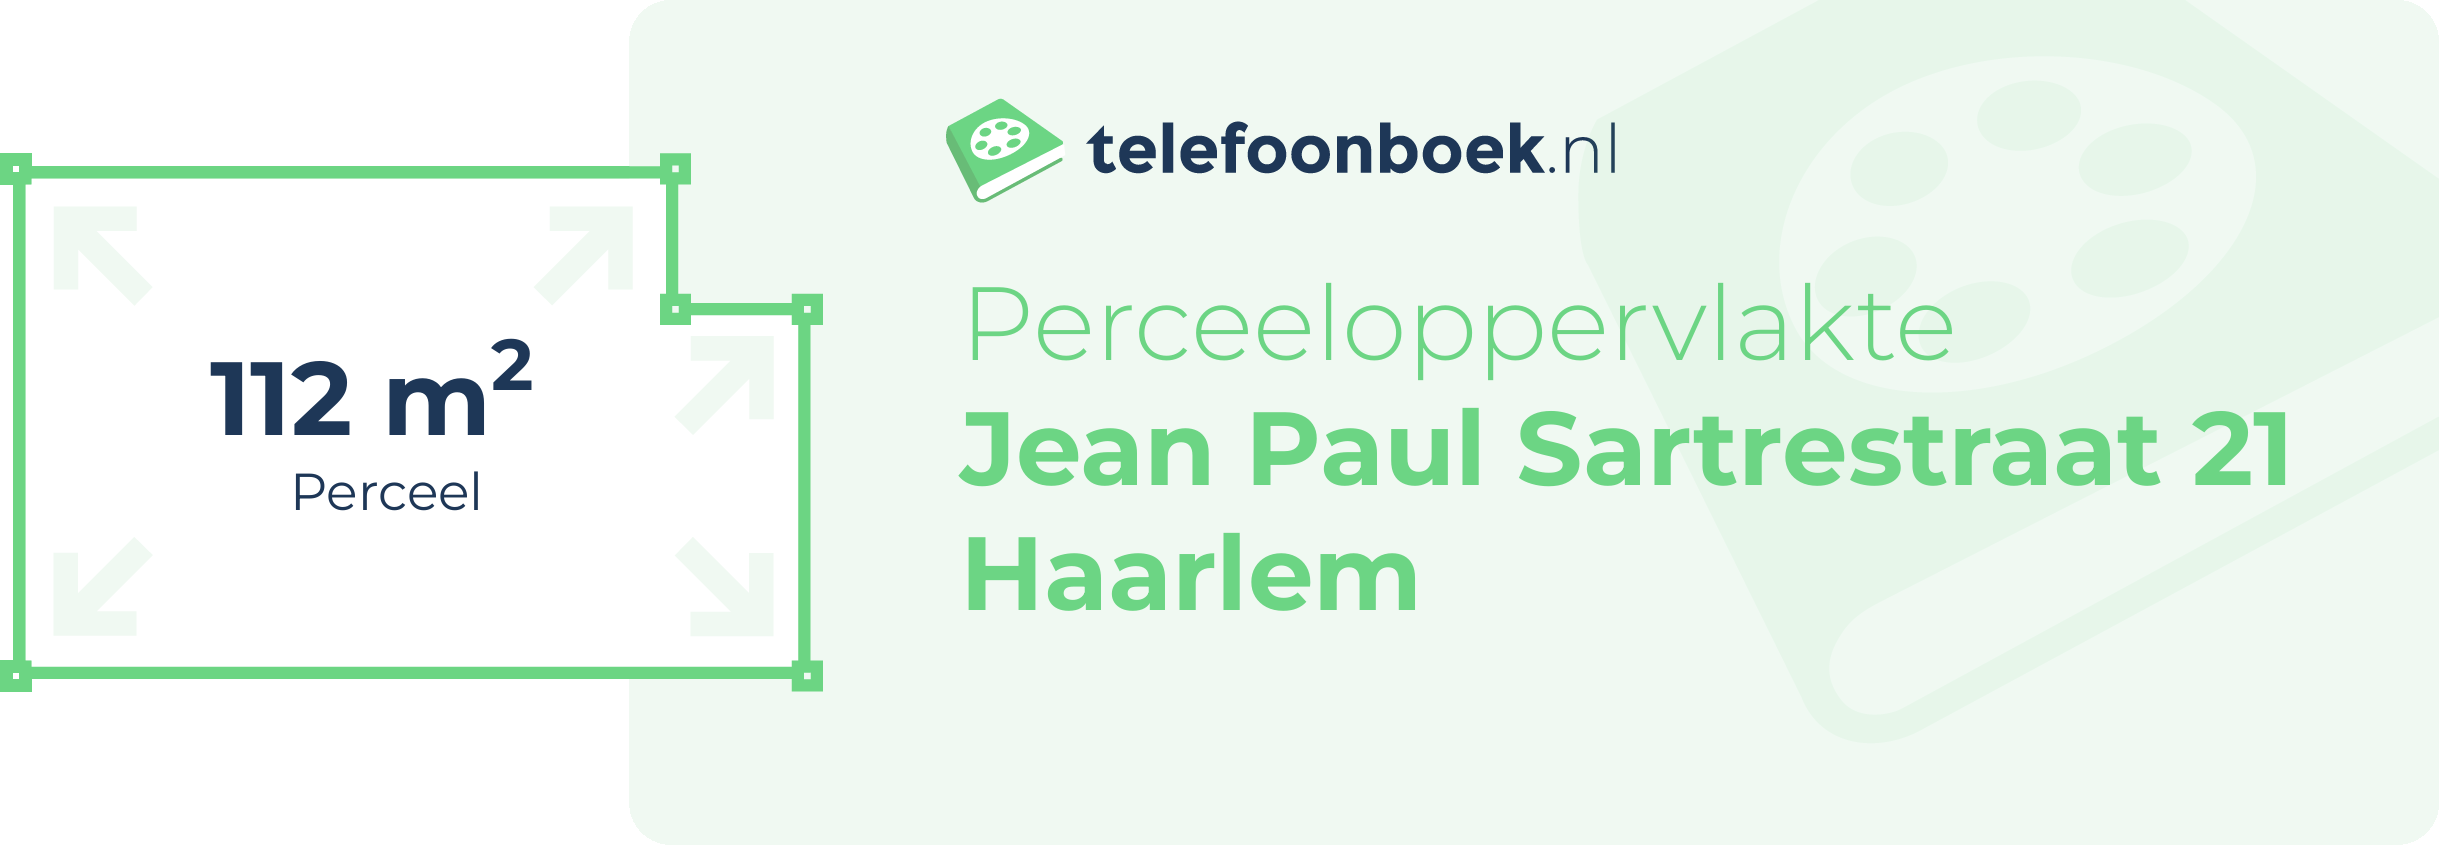 Perceeloppervlakte Jean Paul Sartrestraat 21 Haarlem